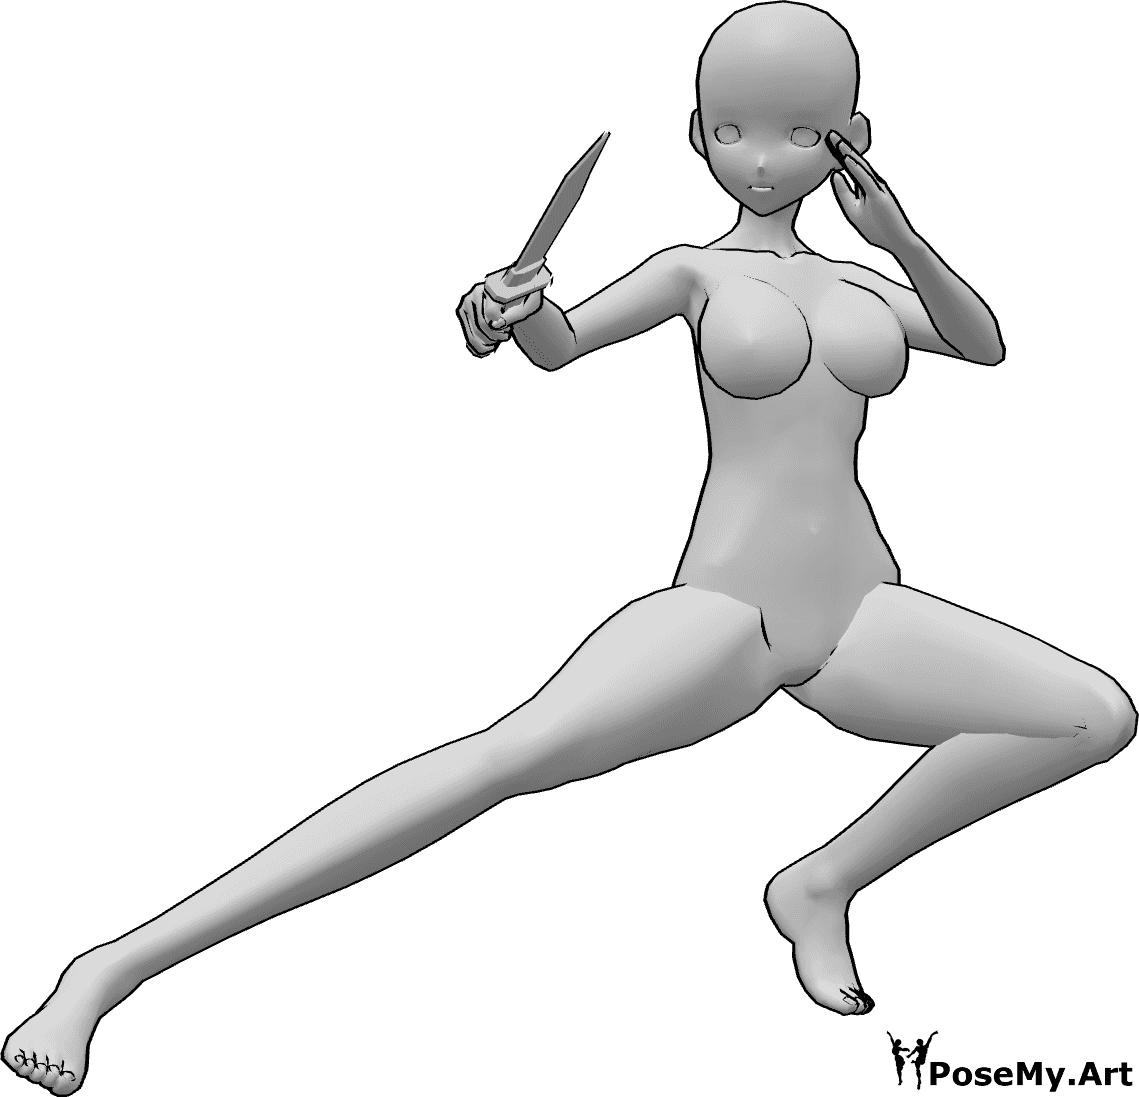 Referência de poses- Pose de faca agachada de anime - A mulher anime está agachada e segura uma faca na mão direita